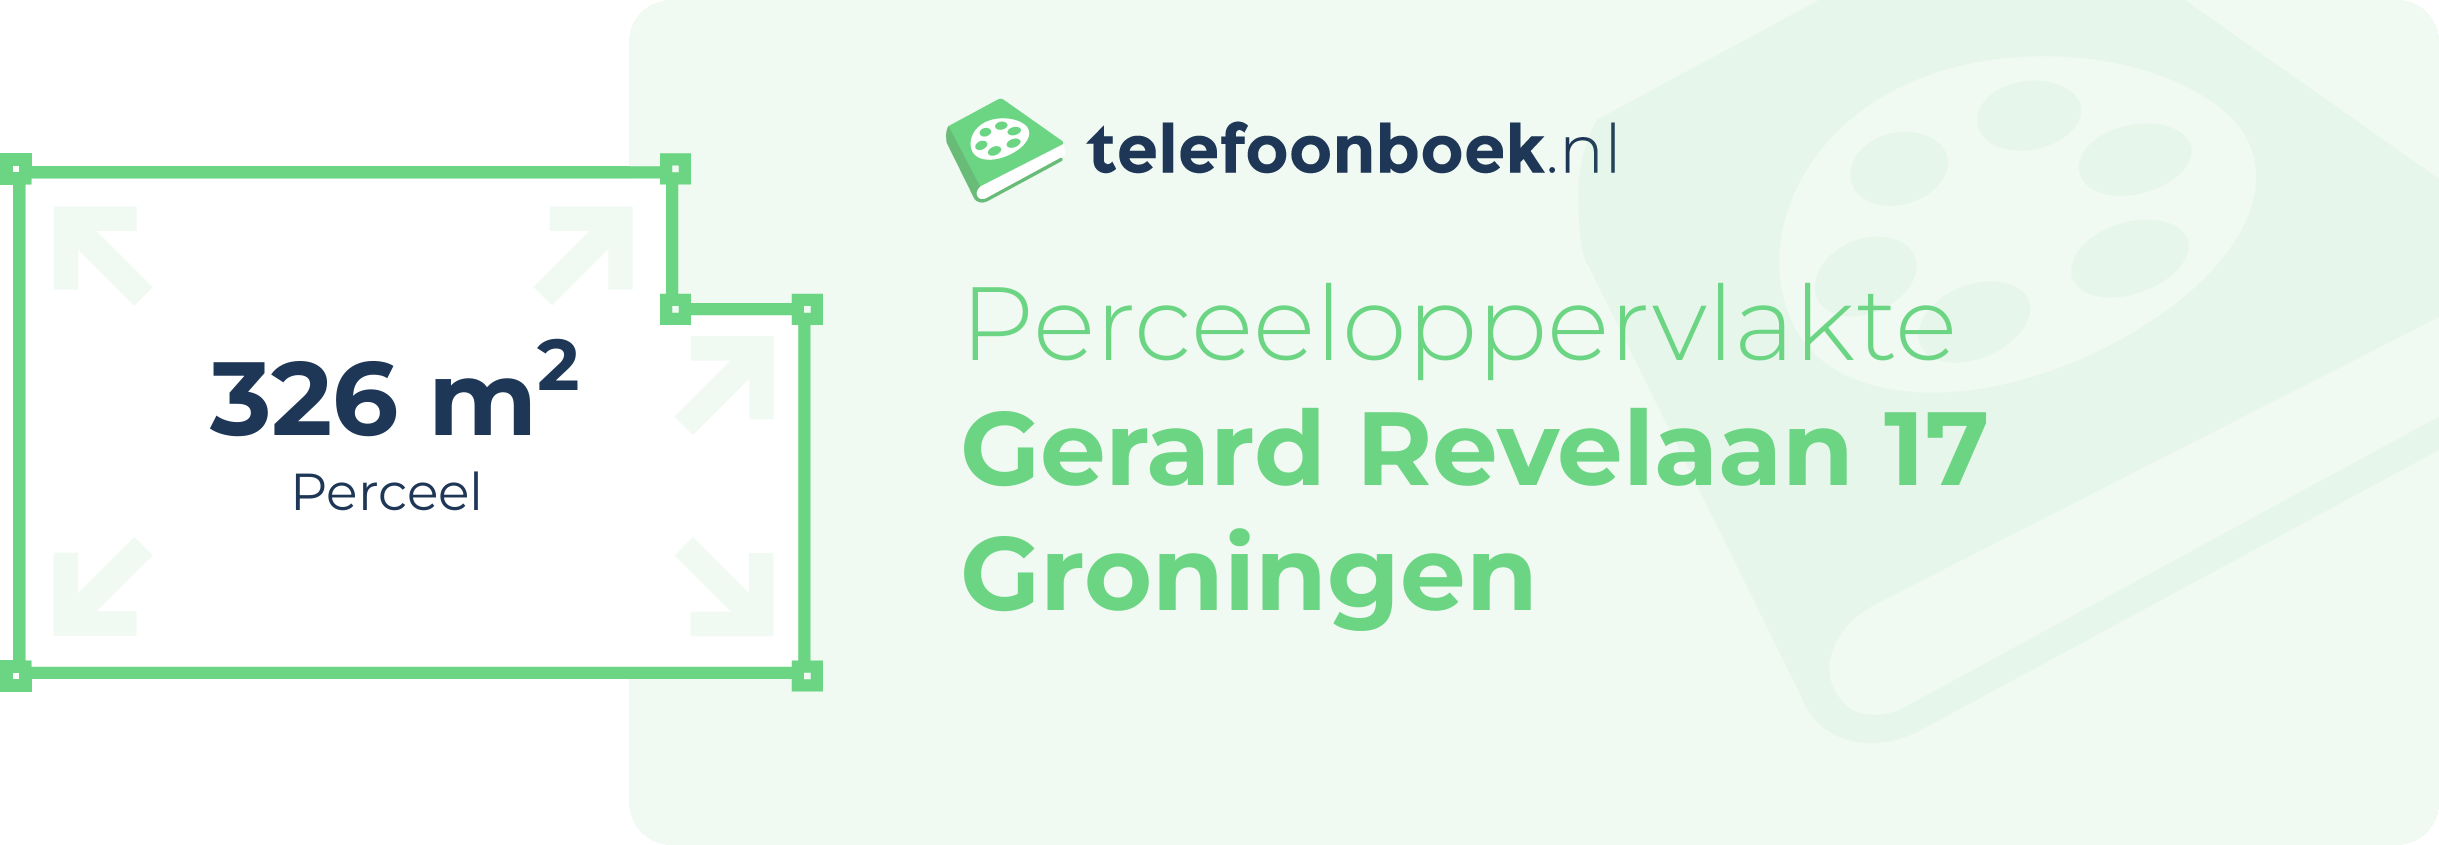 Perceeloppervlakte Gerard Revelaan 17 Groningen